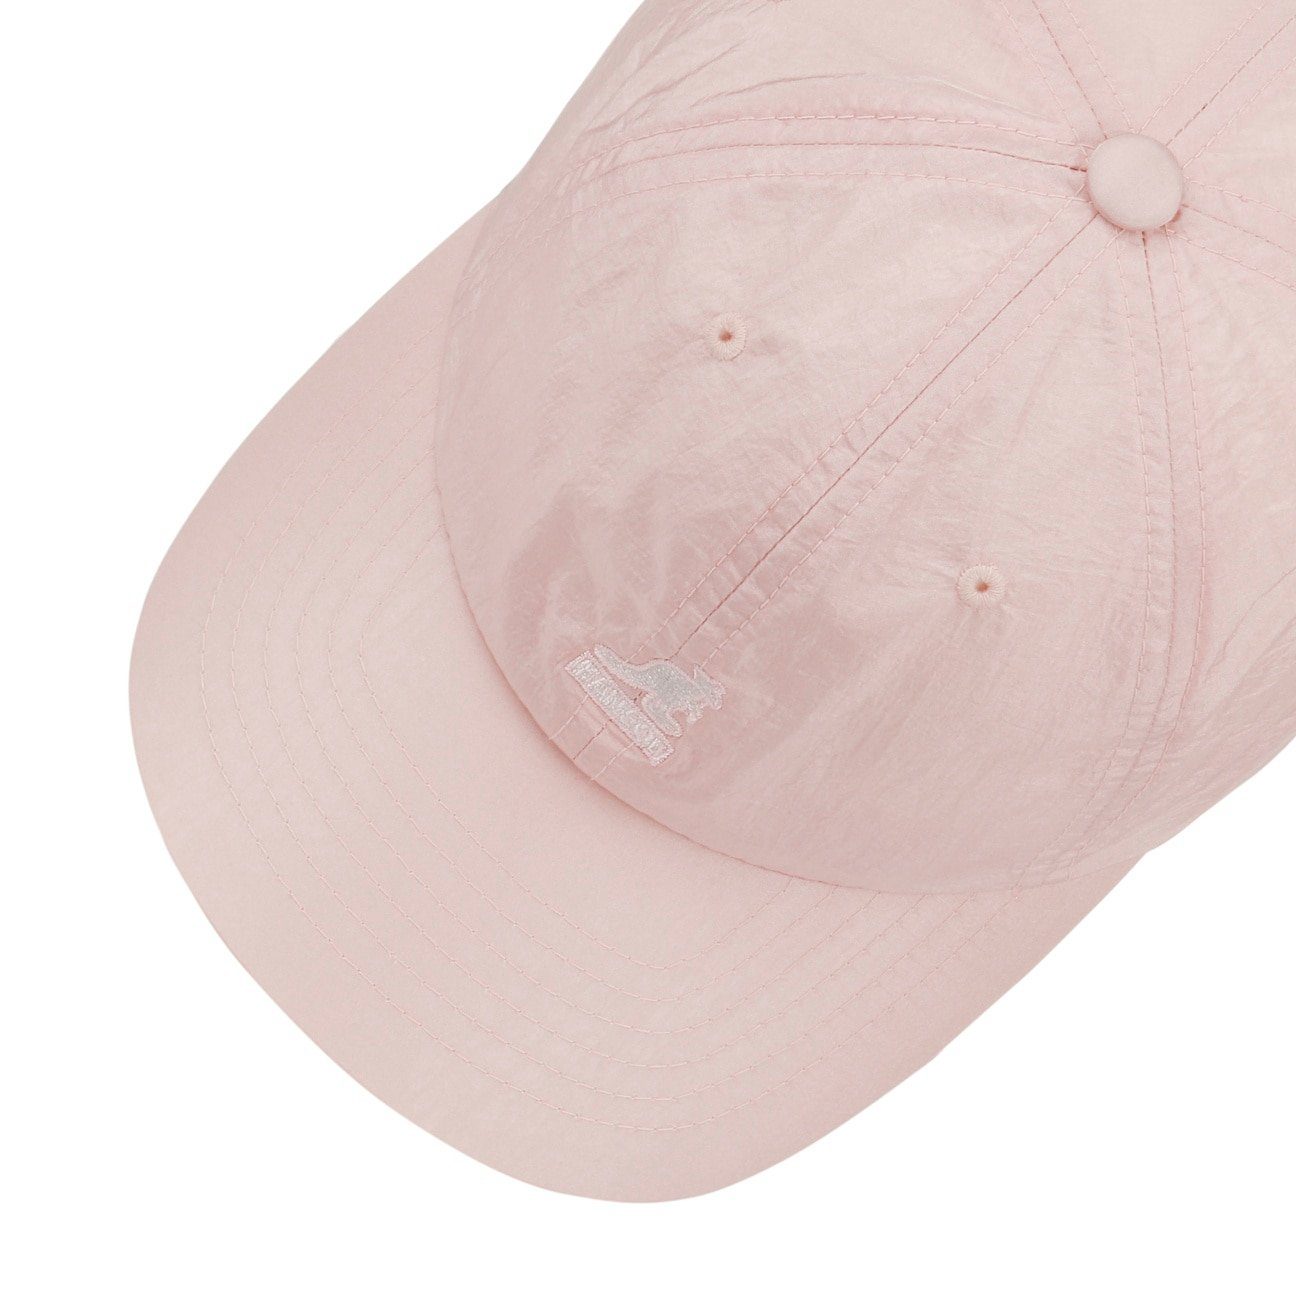 Schirm Cap (1-St) rosa Basecap Baseball Kangol mit